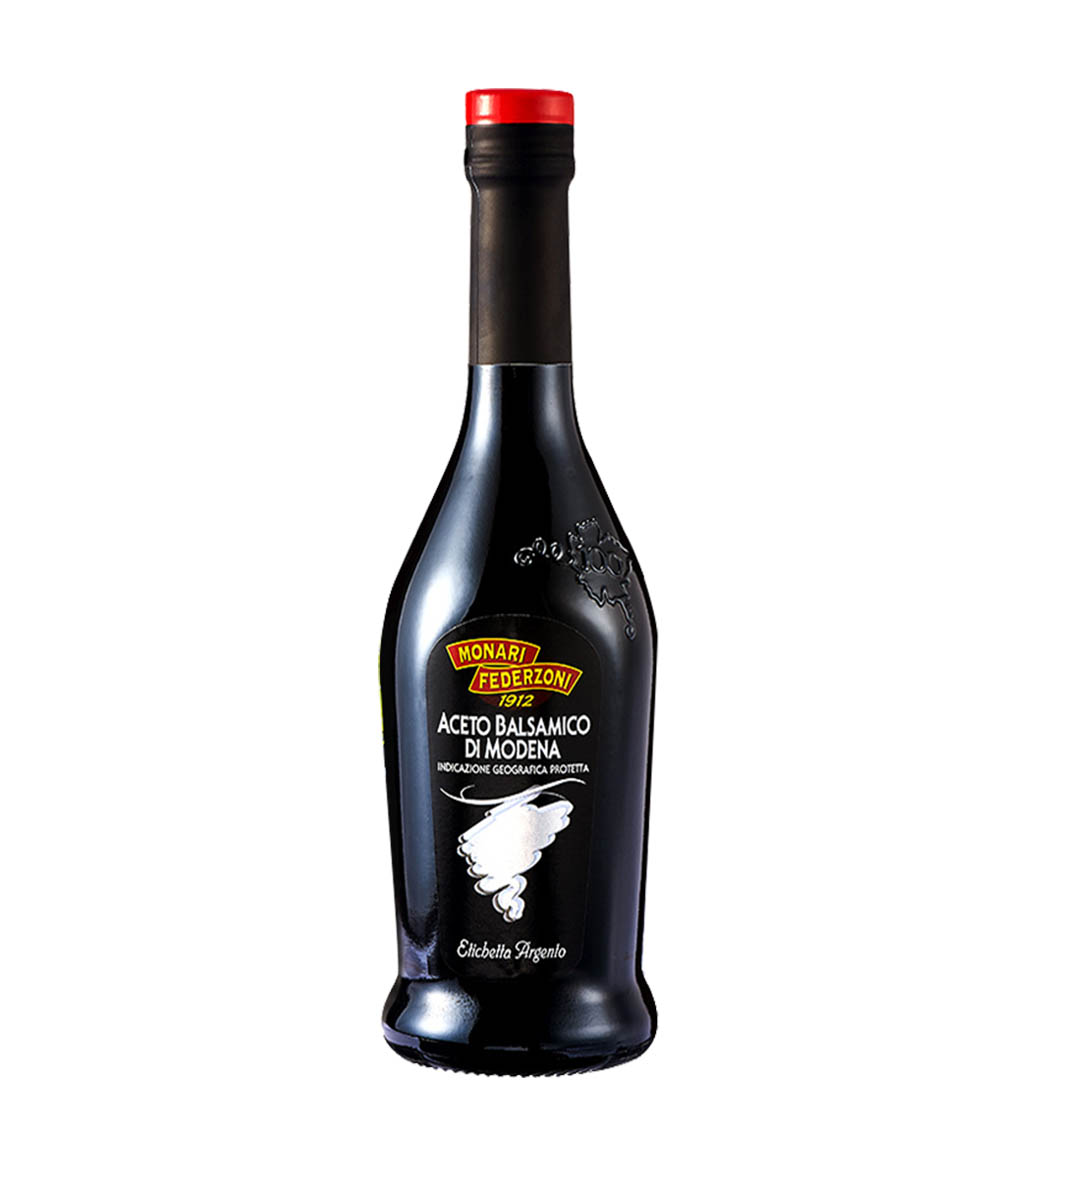 MONARI Balsamic Vinegar of Modena - Etichetta Argento